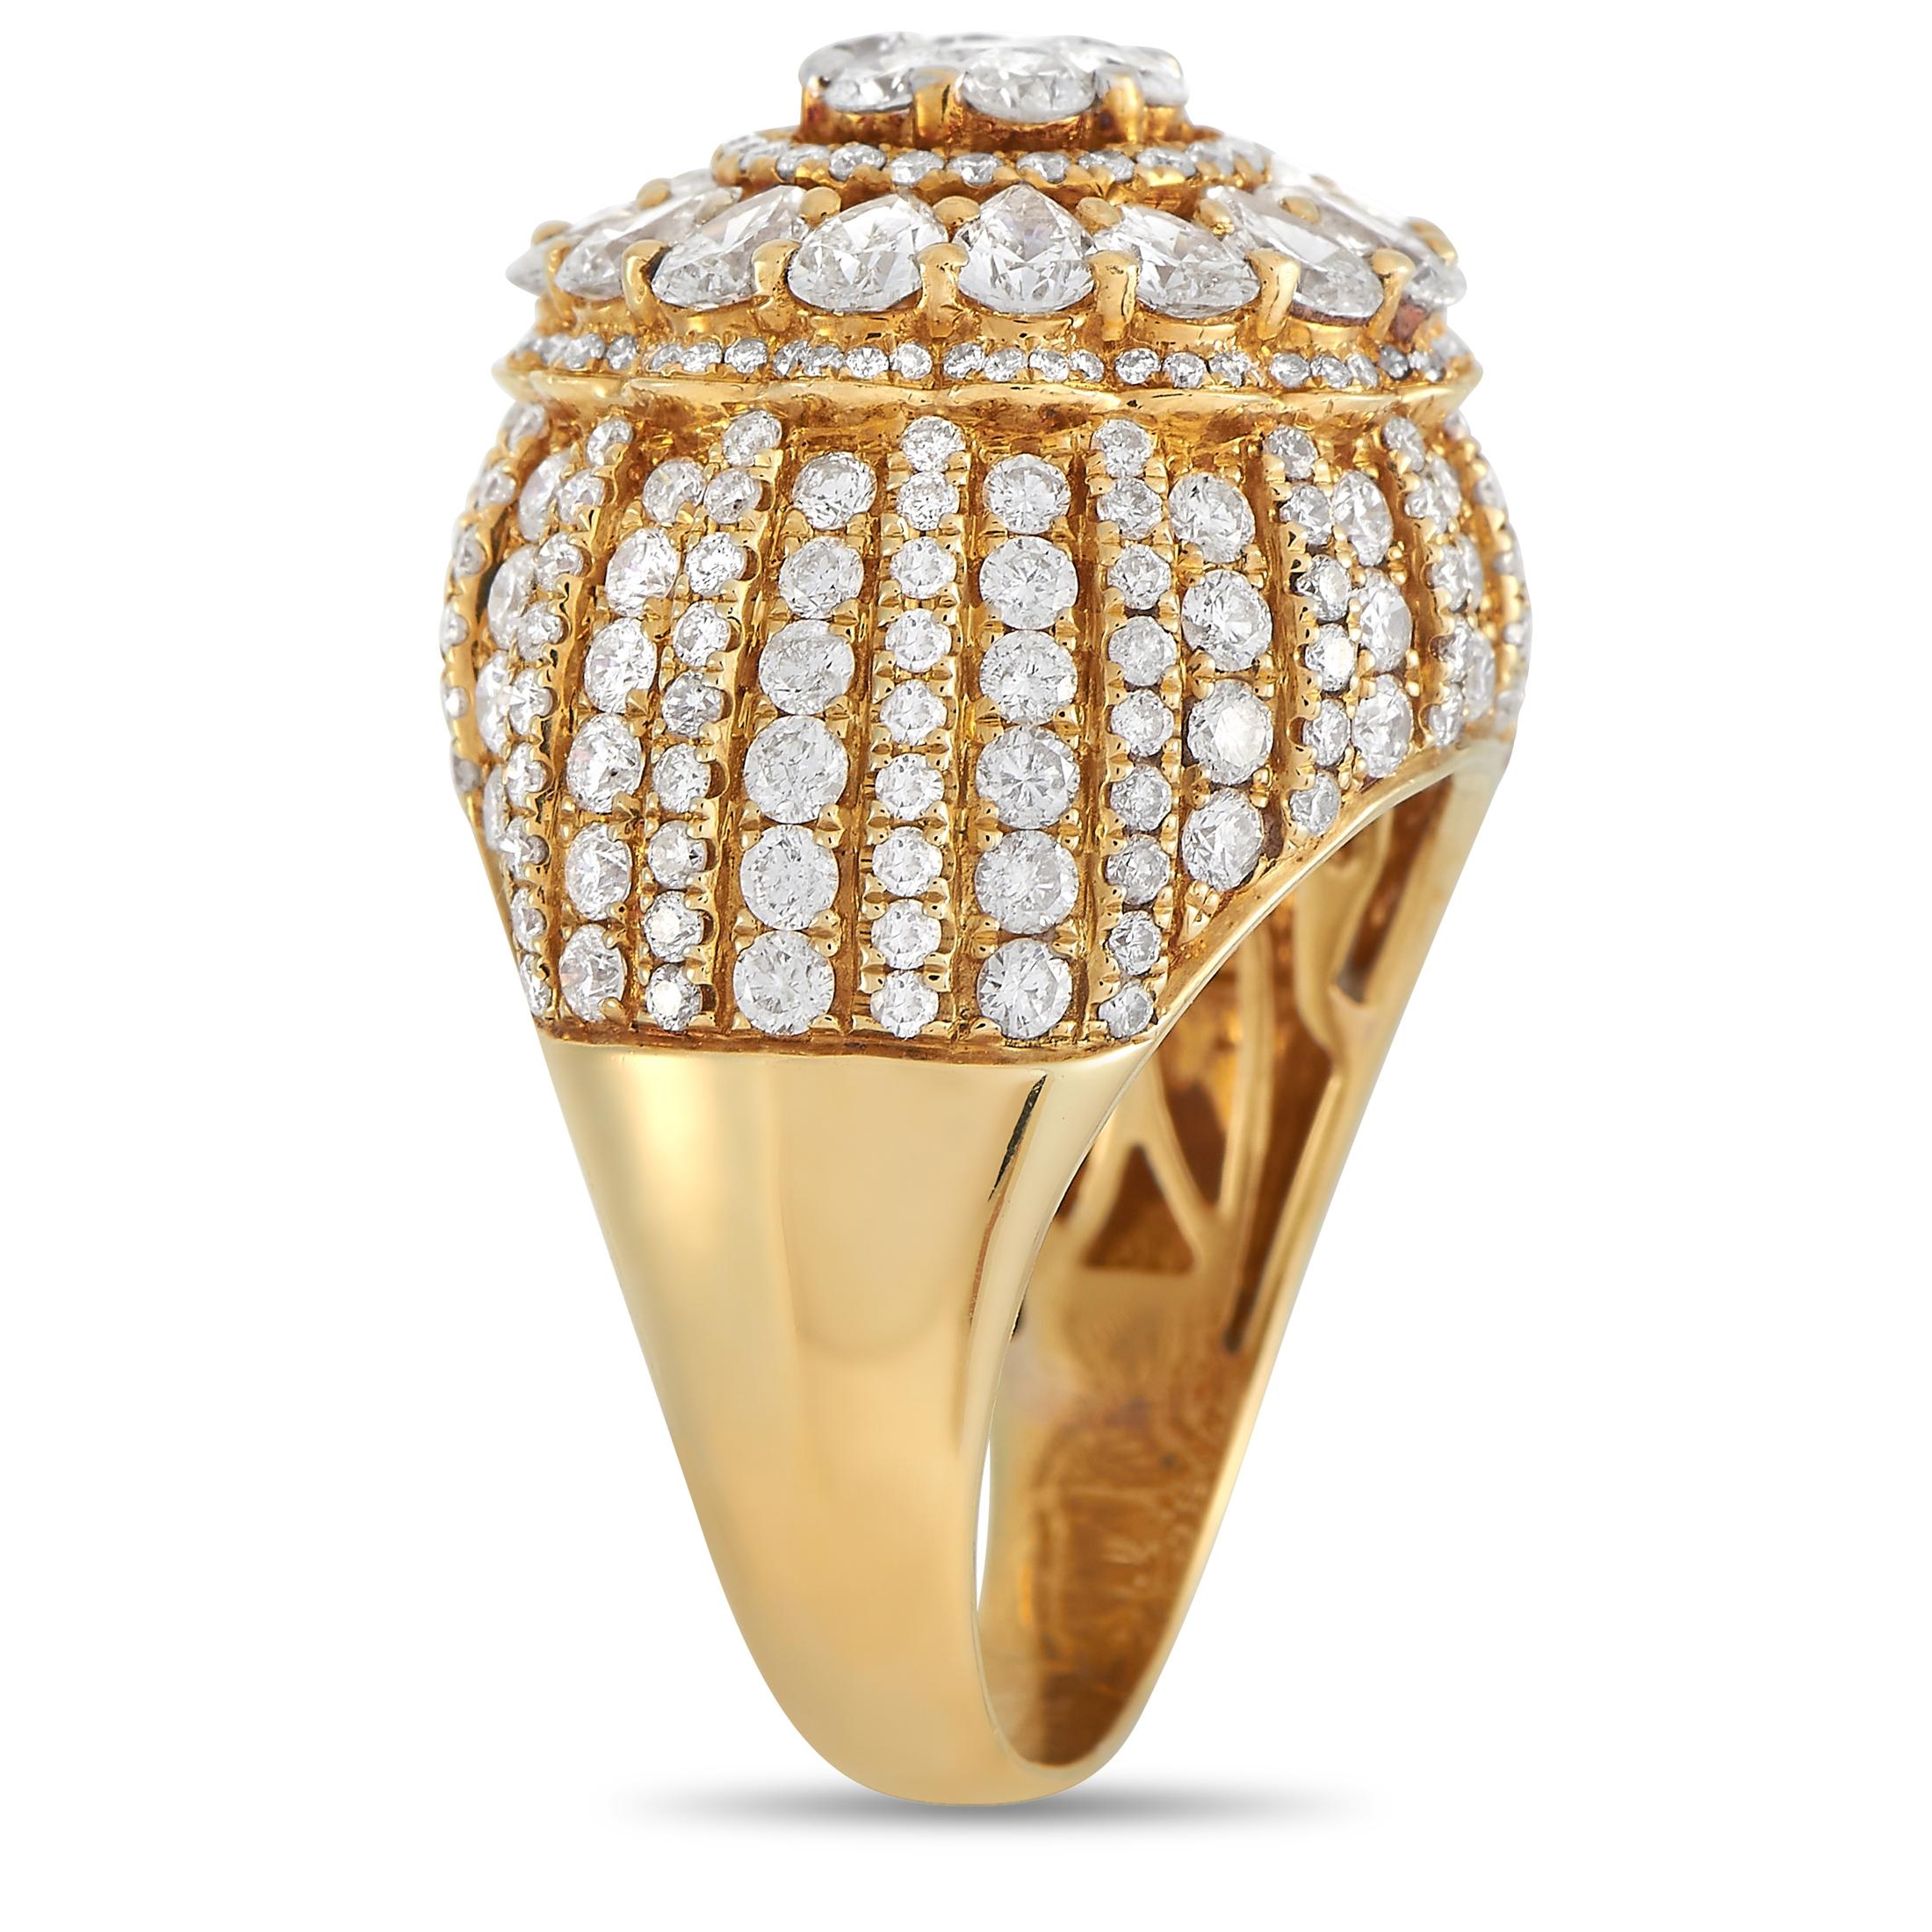 Dieser atemberaubende LB Exclusive 14K Gelbgold 3.00 ct Diamantring ist mühelos elegant. Der Ring ist aus 14-karätigem Gelbgold gefertigt und auf der Vorderseite des Bandes mit Reihen kleiner Diamanten im Rundschliff besetzt. Die Vorderseite des